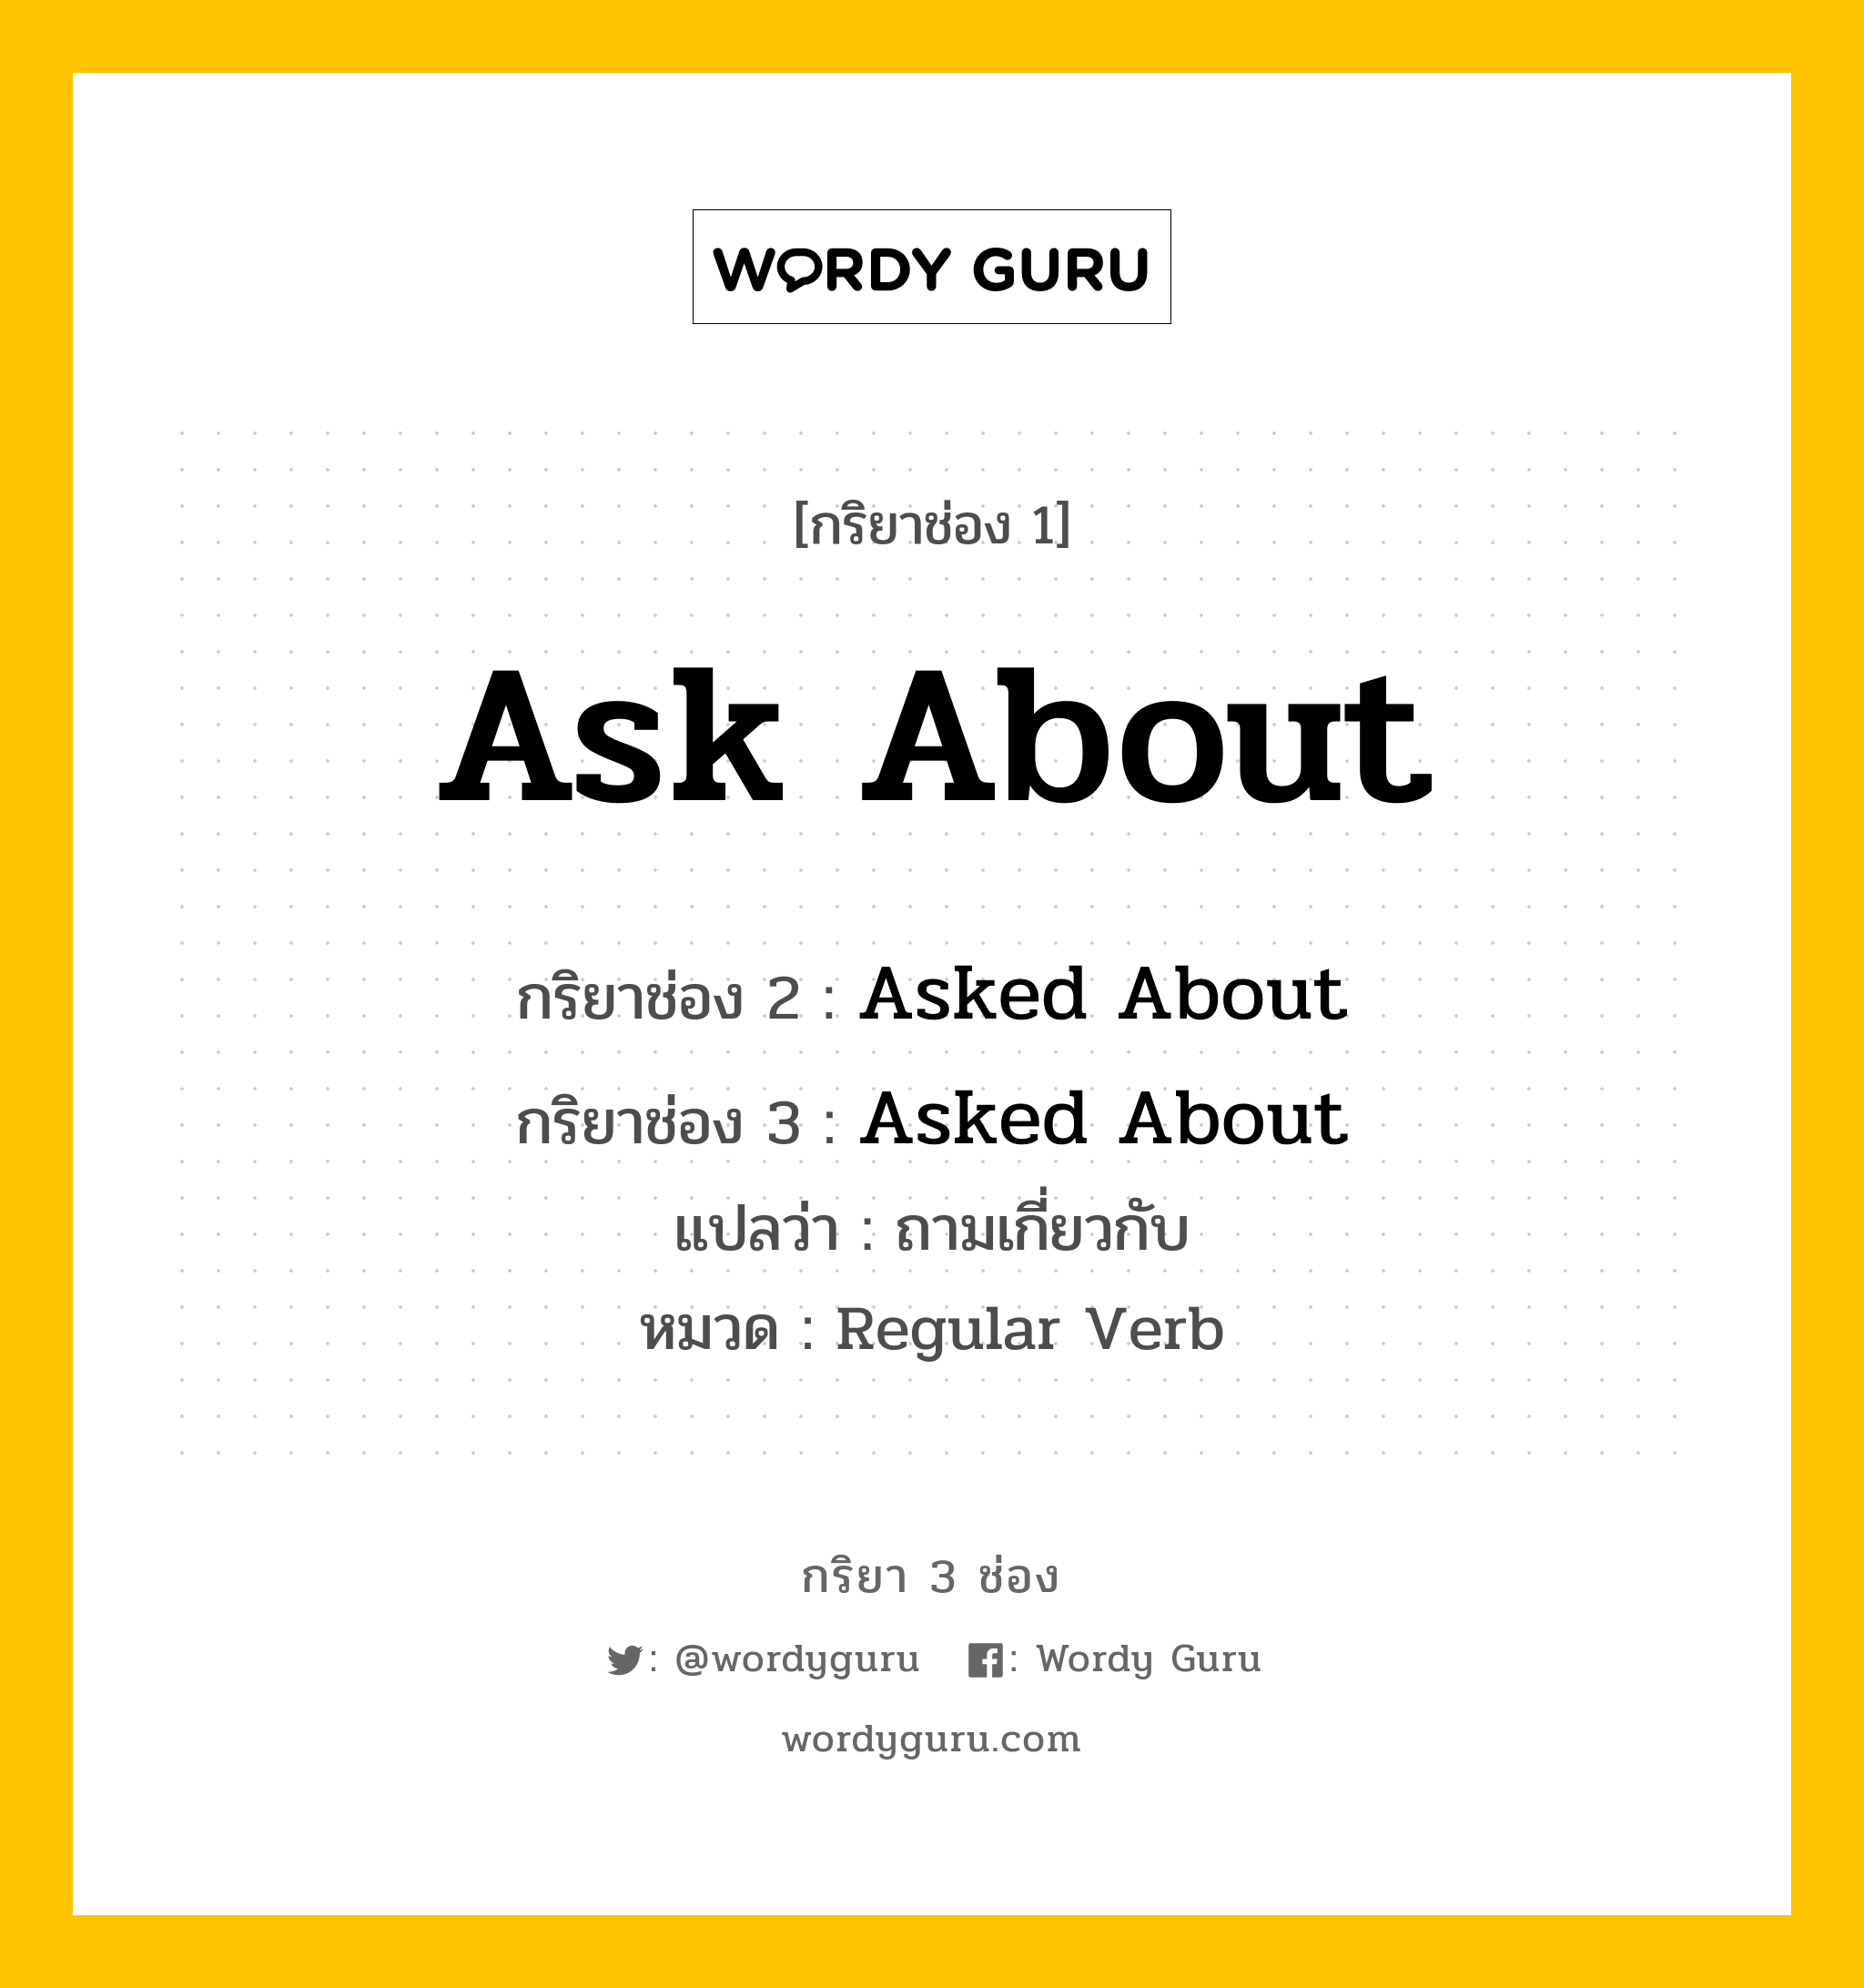 กริยา 3 ช่อง ของ Ask About คืออะไร?, กริยาช่อง 1 Ask About กริยาช่อง 2 Asked About กริยาช่อง 3 Asked About แปลว่า ถามเกี่ยวกับ หมวด Regular Verb หมวด Regular Verb